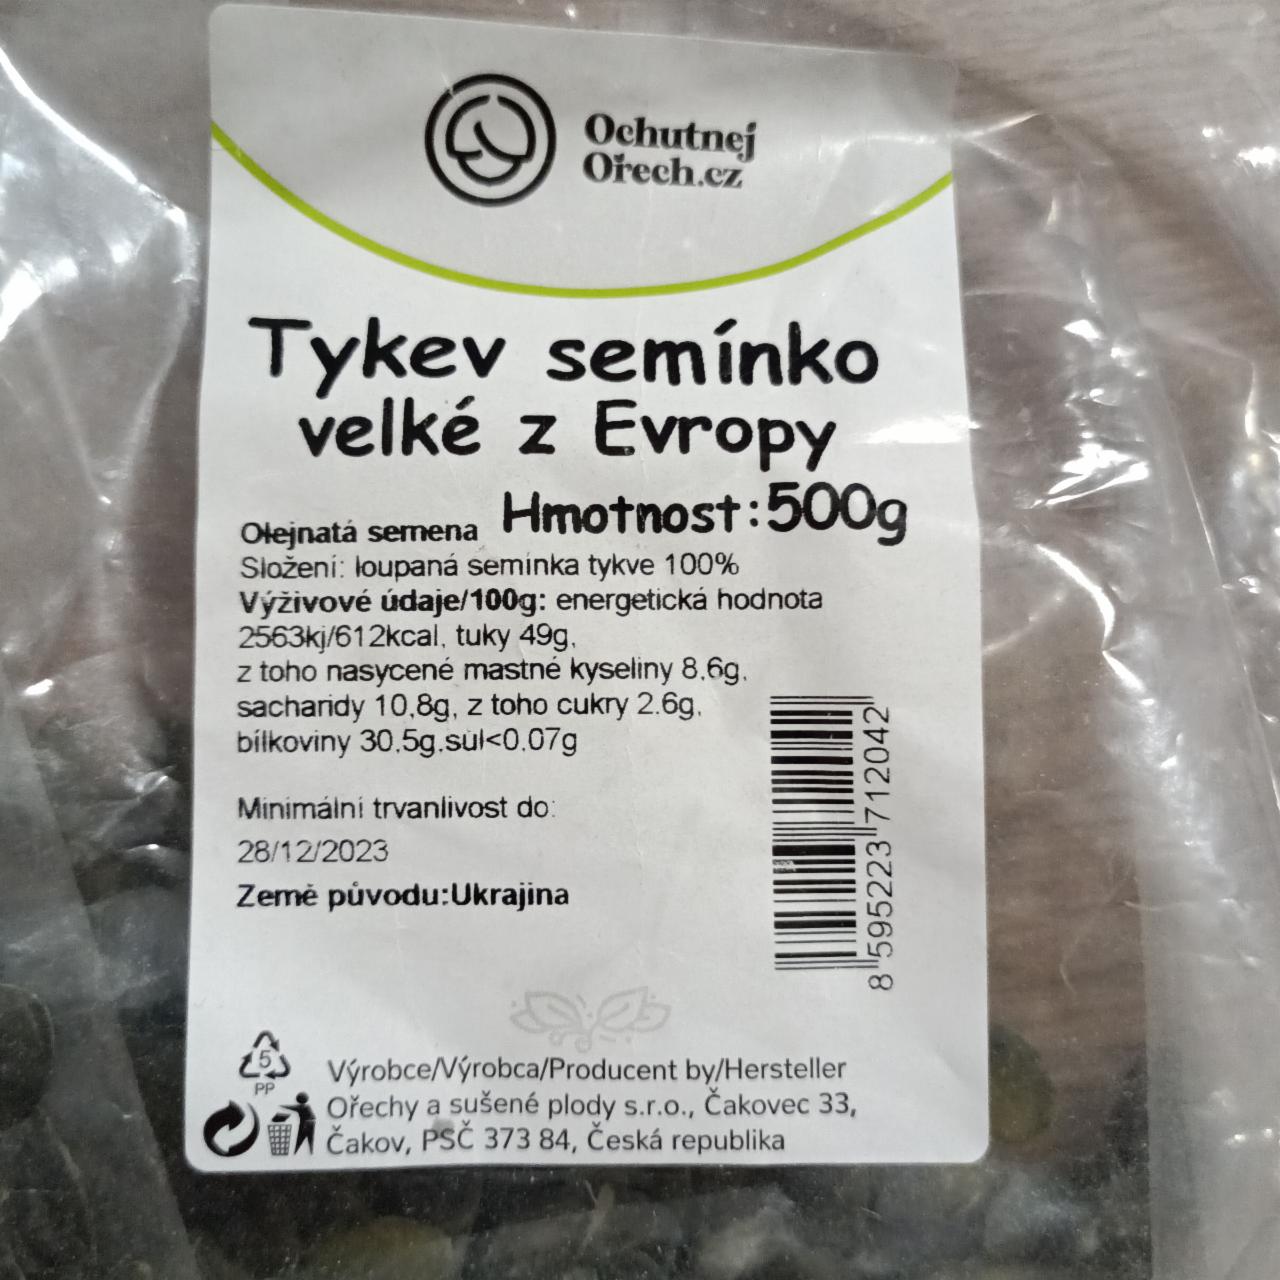 Fotografie - Tykev semínko velké z Evropy Ochutnejorech.cz